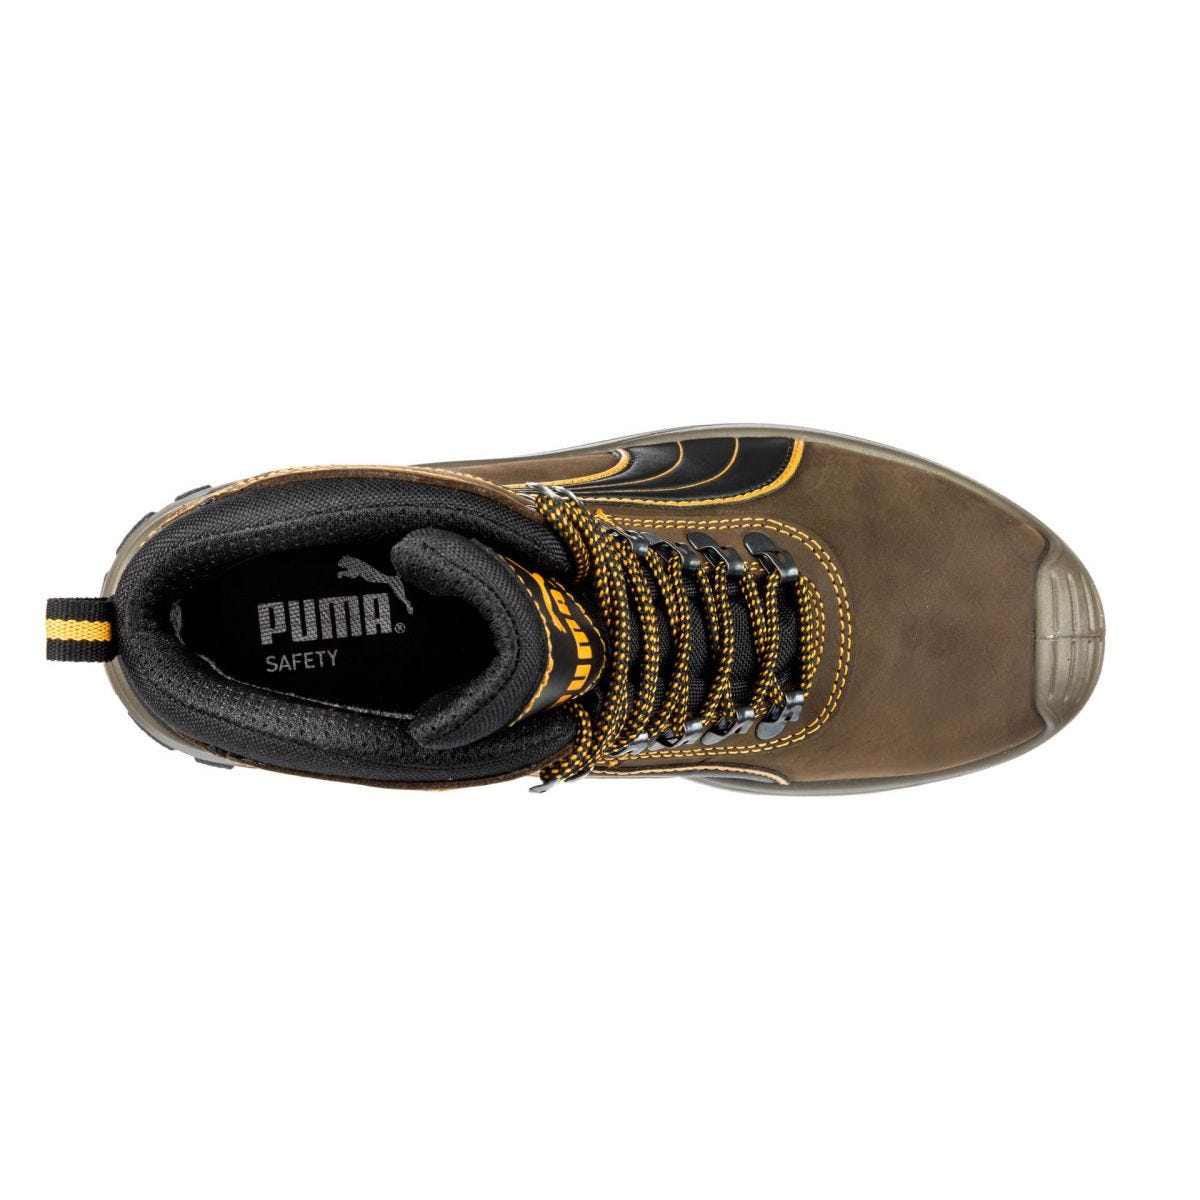 Chaussures de sécurité Sierra Nevada mid S3 HRO SRC - Puma - Taille 48 2